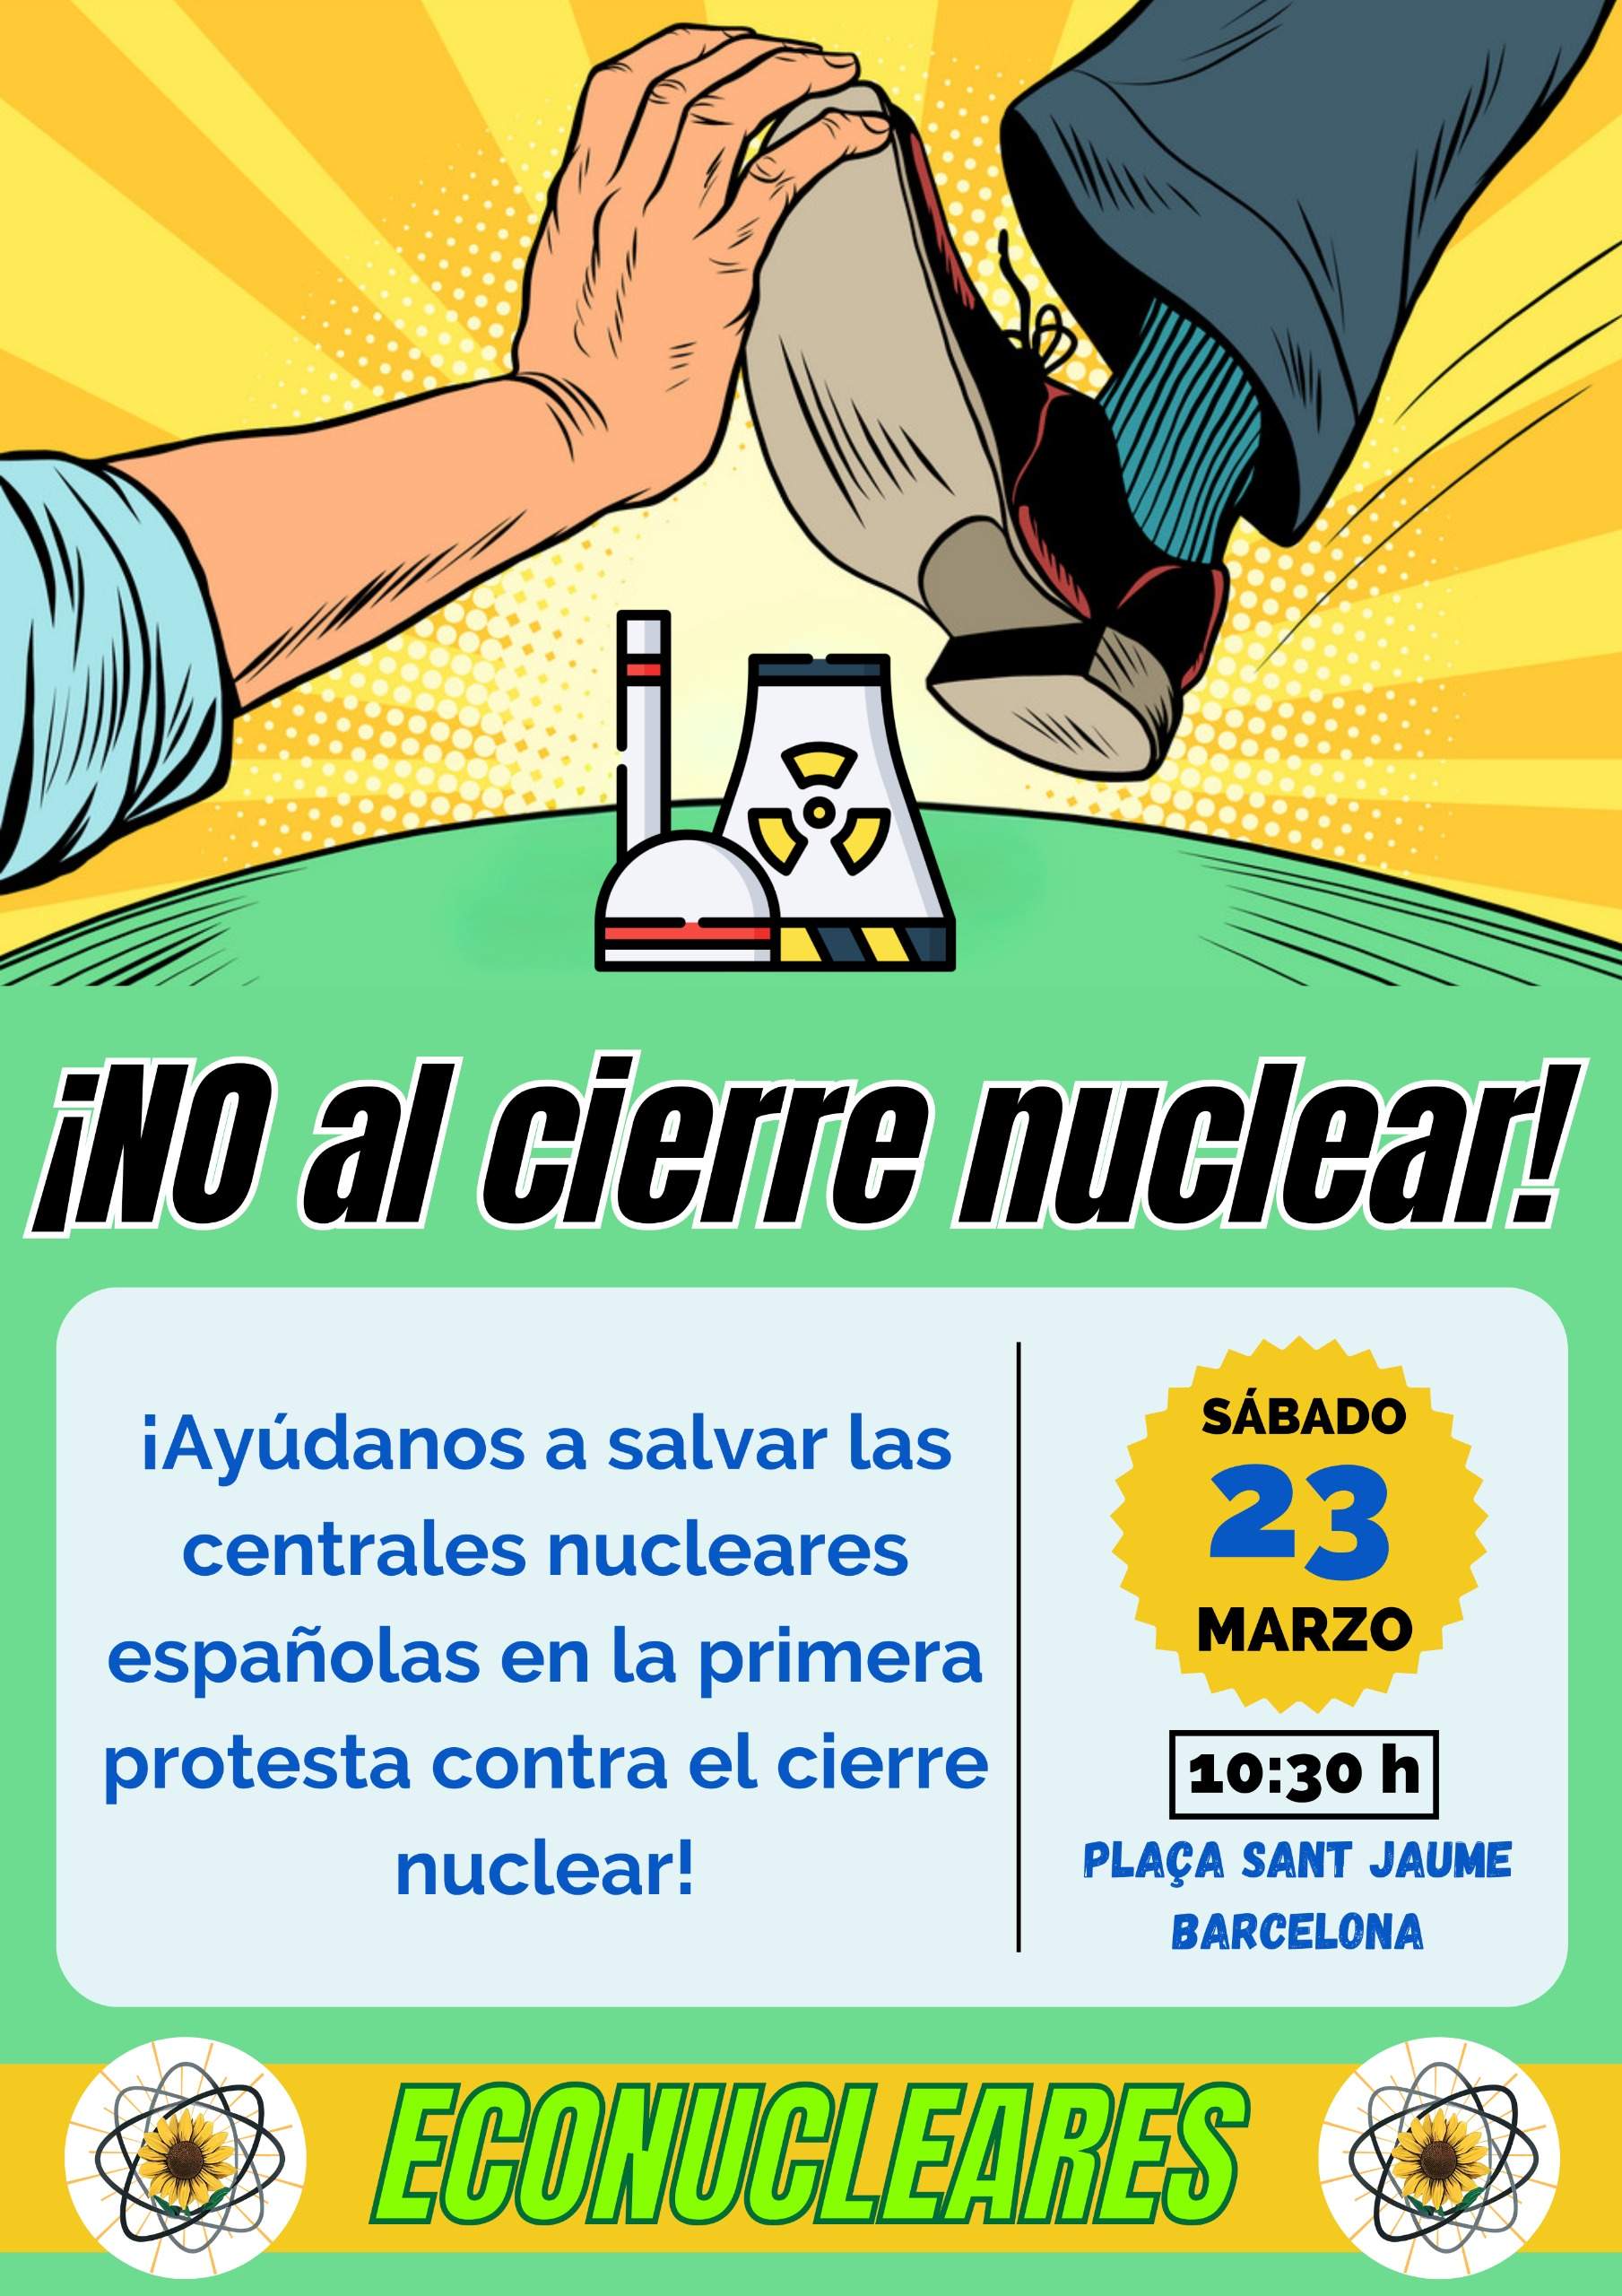 La oposición al apagón nuclear decretado por el Gobierno toma forma: se manifestarán este 23 de marzo en BCN